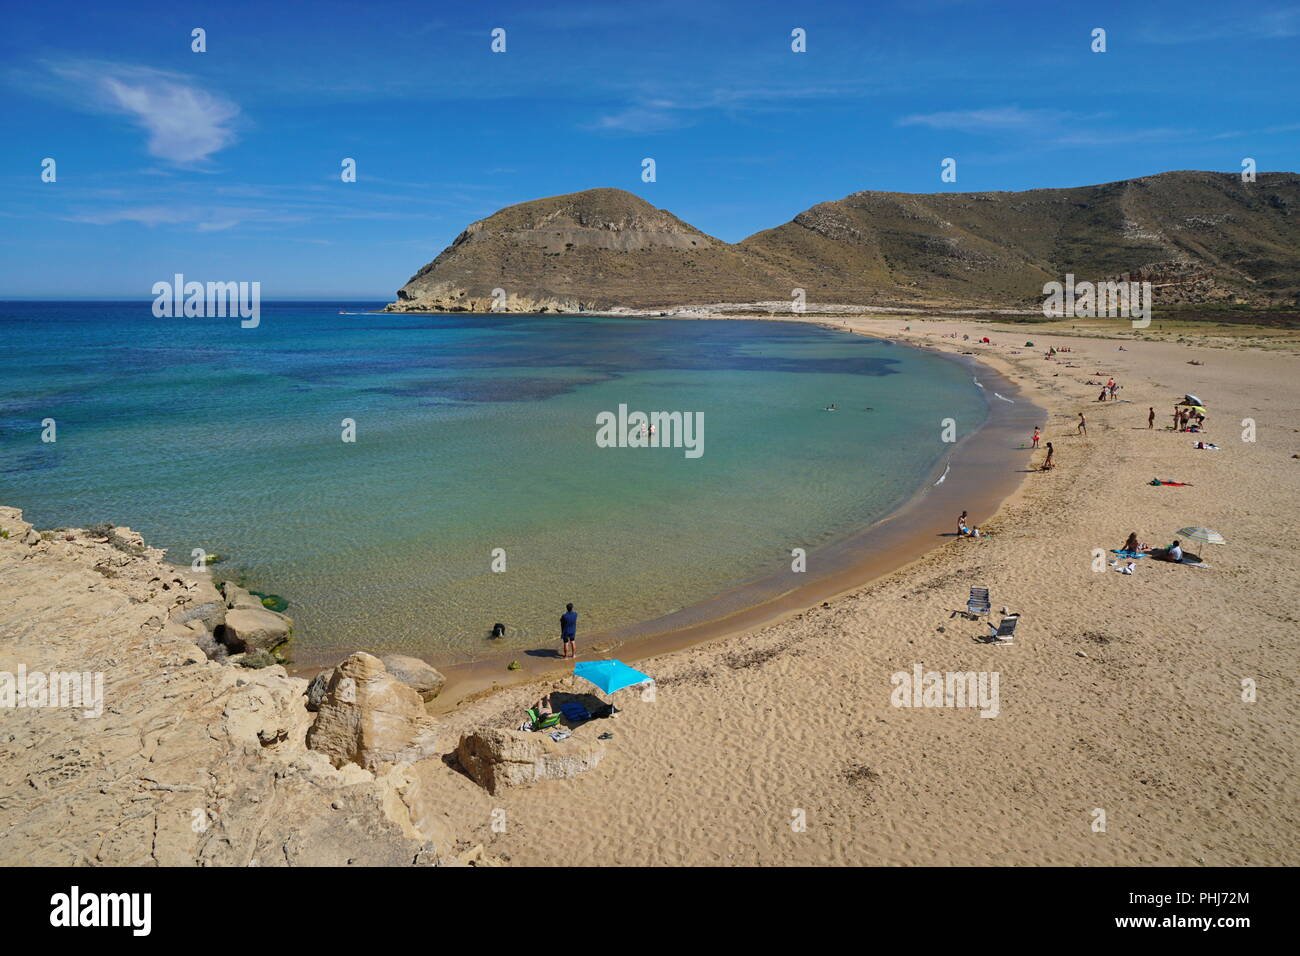 Sandy beach in the Cabo de Gata-Nijar natural park, Playa El Playazo, Mediterranean sea, Almeria, Andalusia, Spain Stock Photo